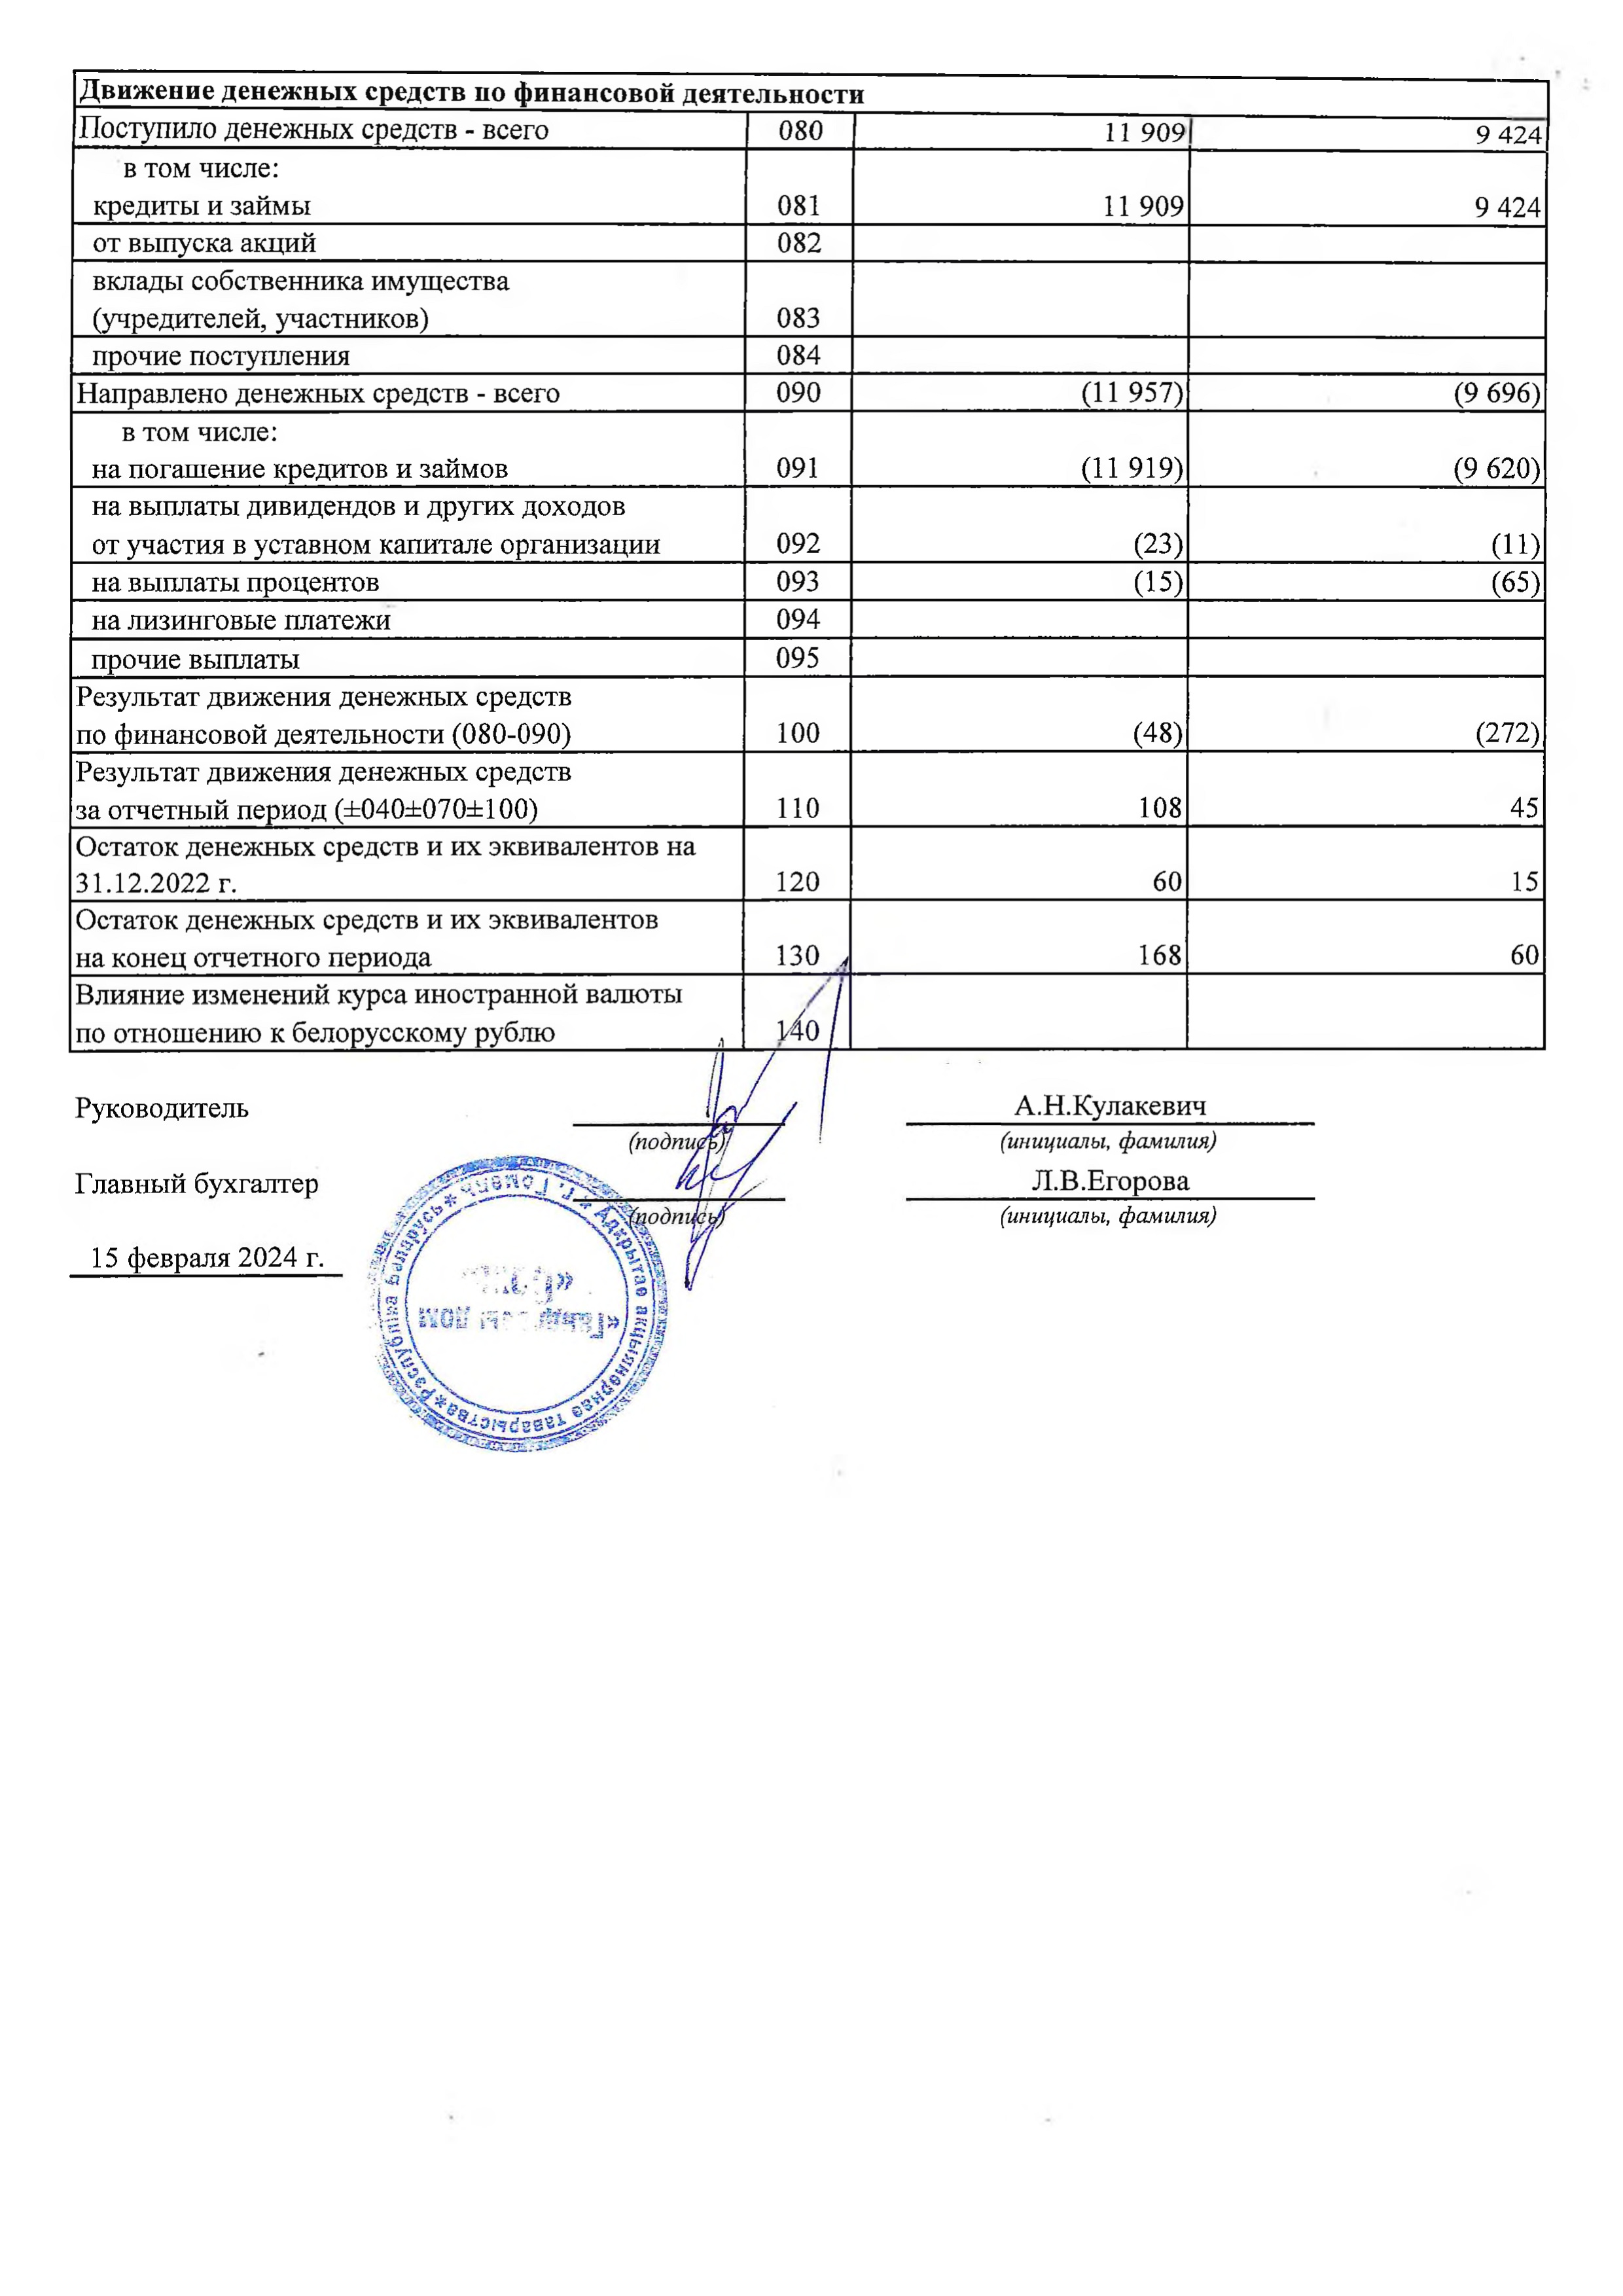 ОАО Торговый дом Сож - Отчет о движении денежных средств за 2023 год